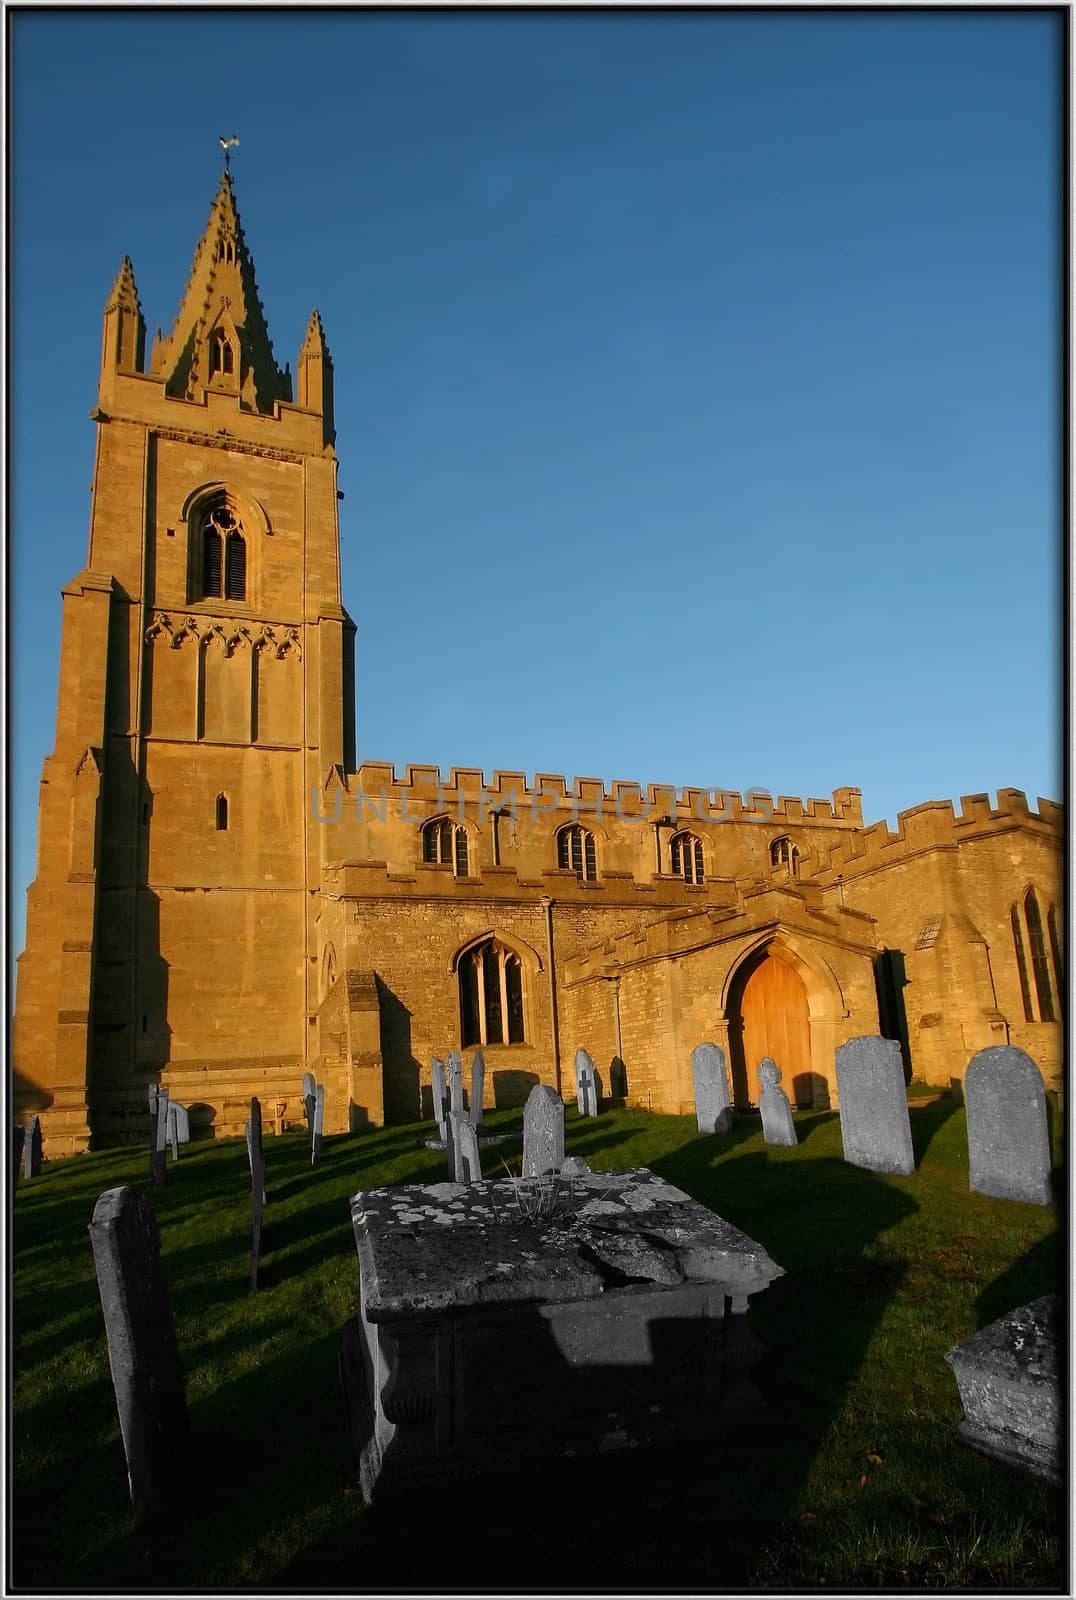 13th century church in Epingham, United Kingdom